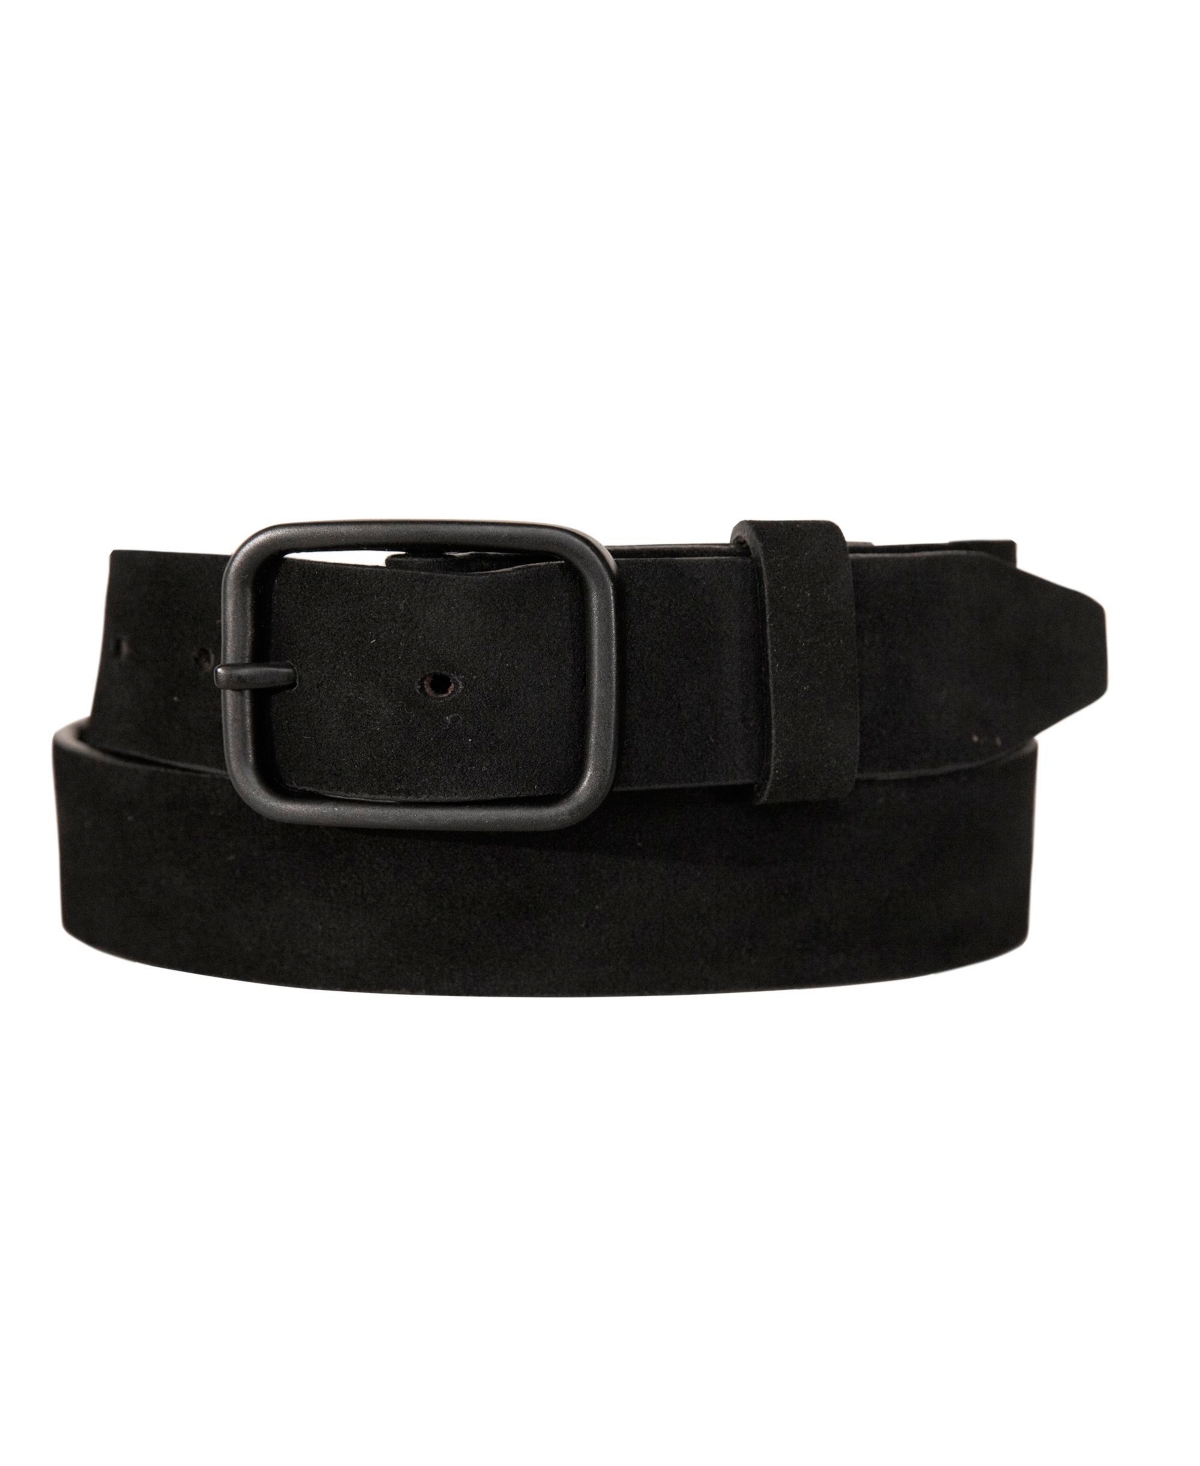 Men's Distressed Suede Leather Belt - Black